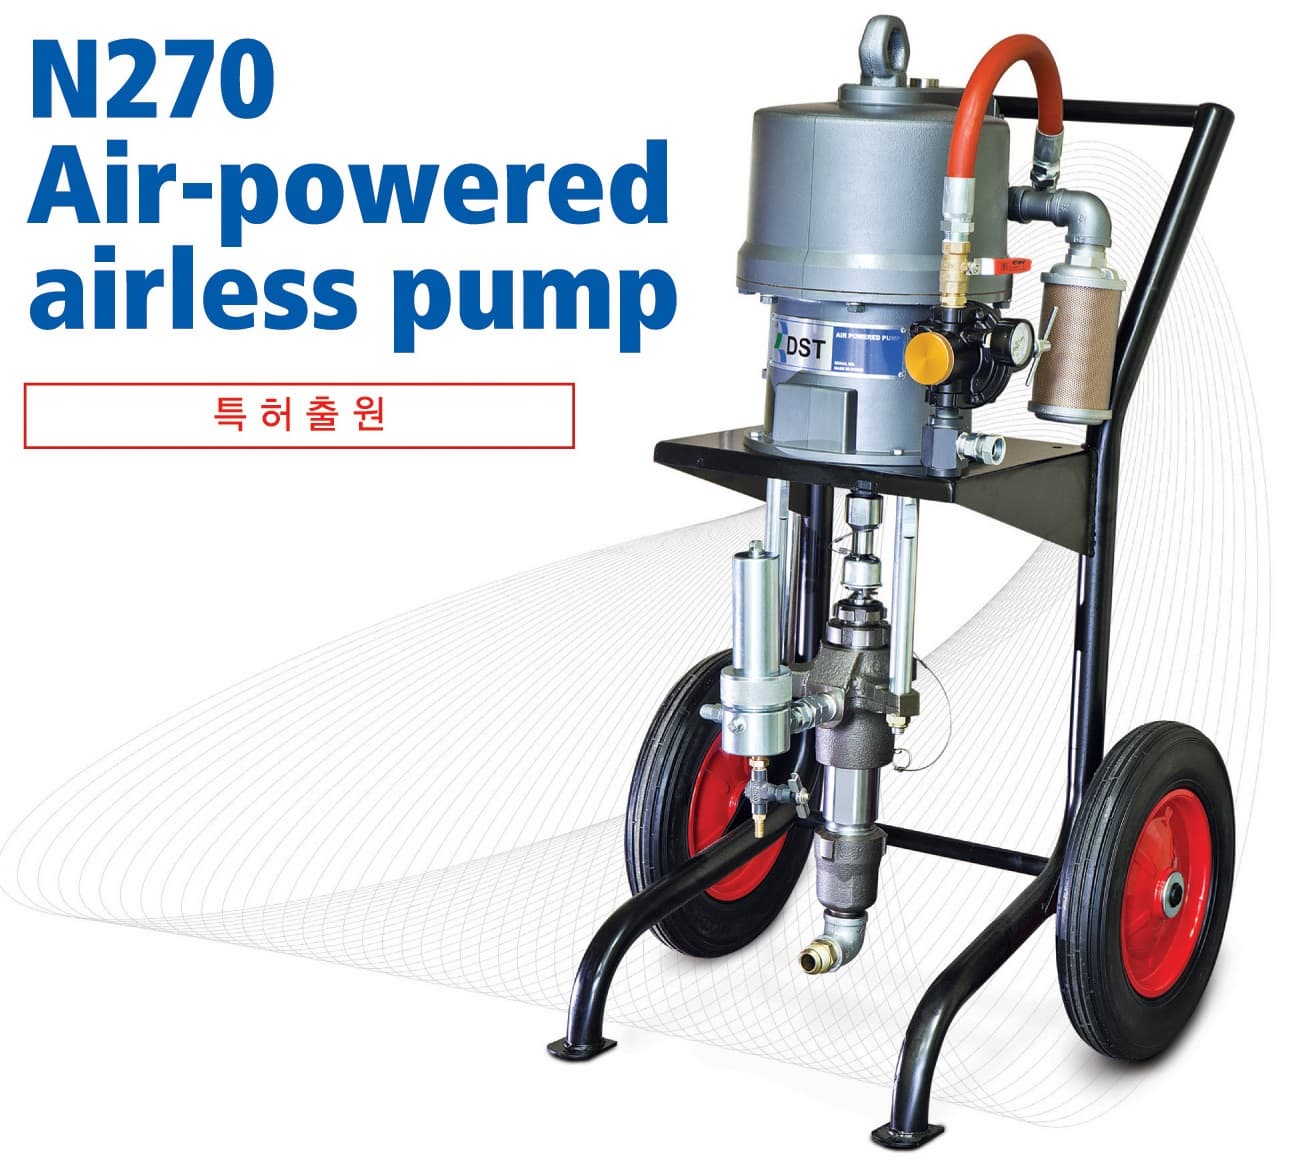 N270 Air-powered airless pump